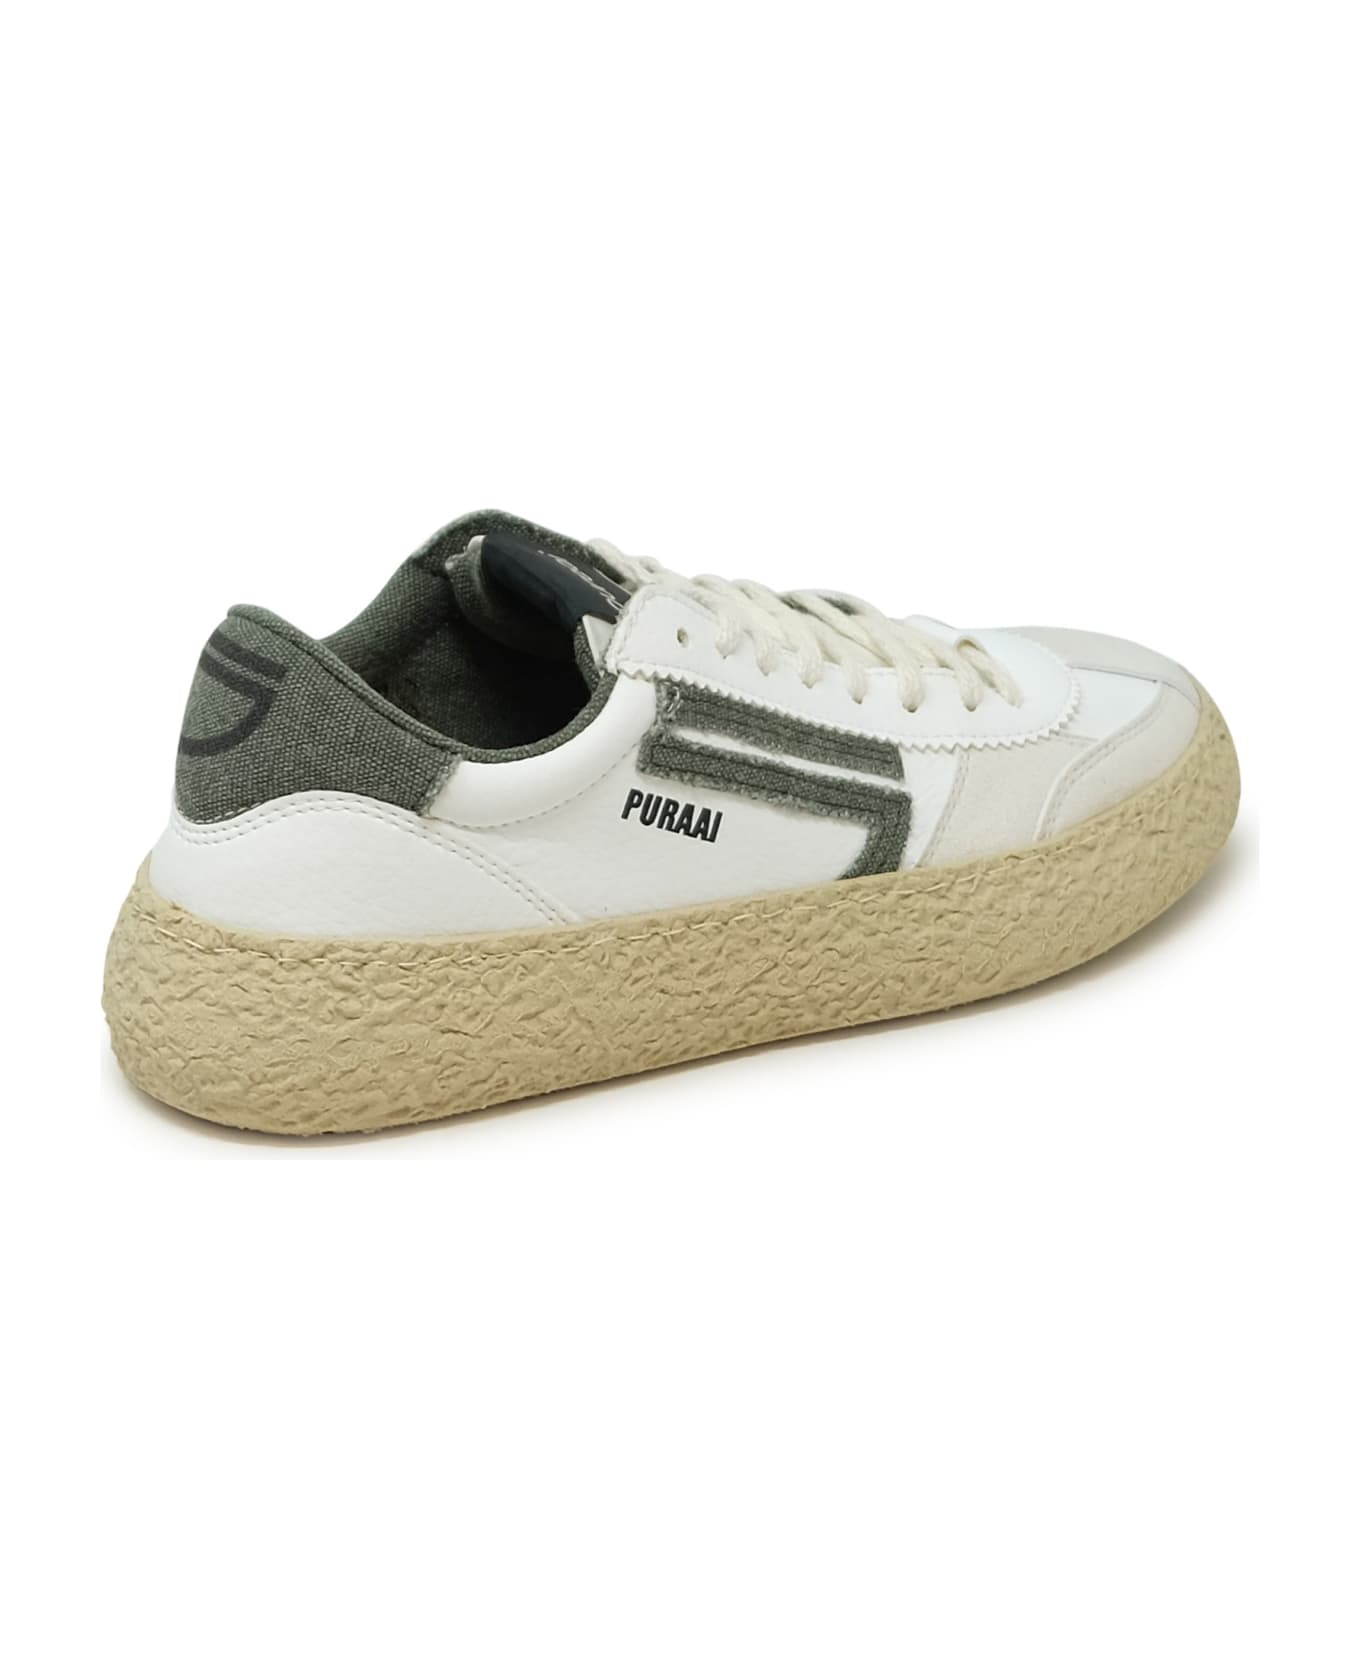 Puraai 1.01 Classic White And Green Vegan Leather Sneakers - WHITE